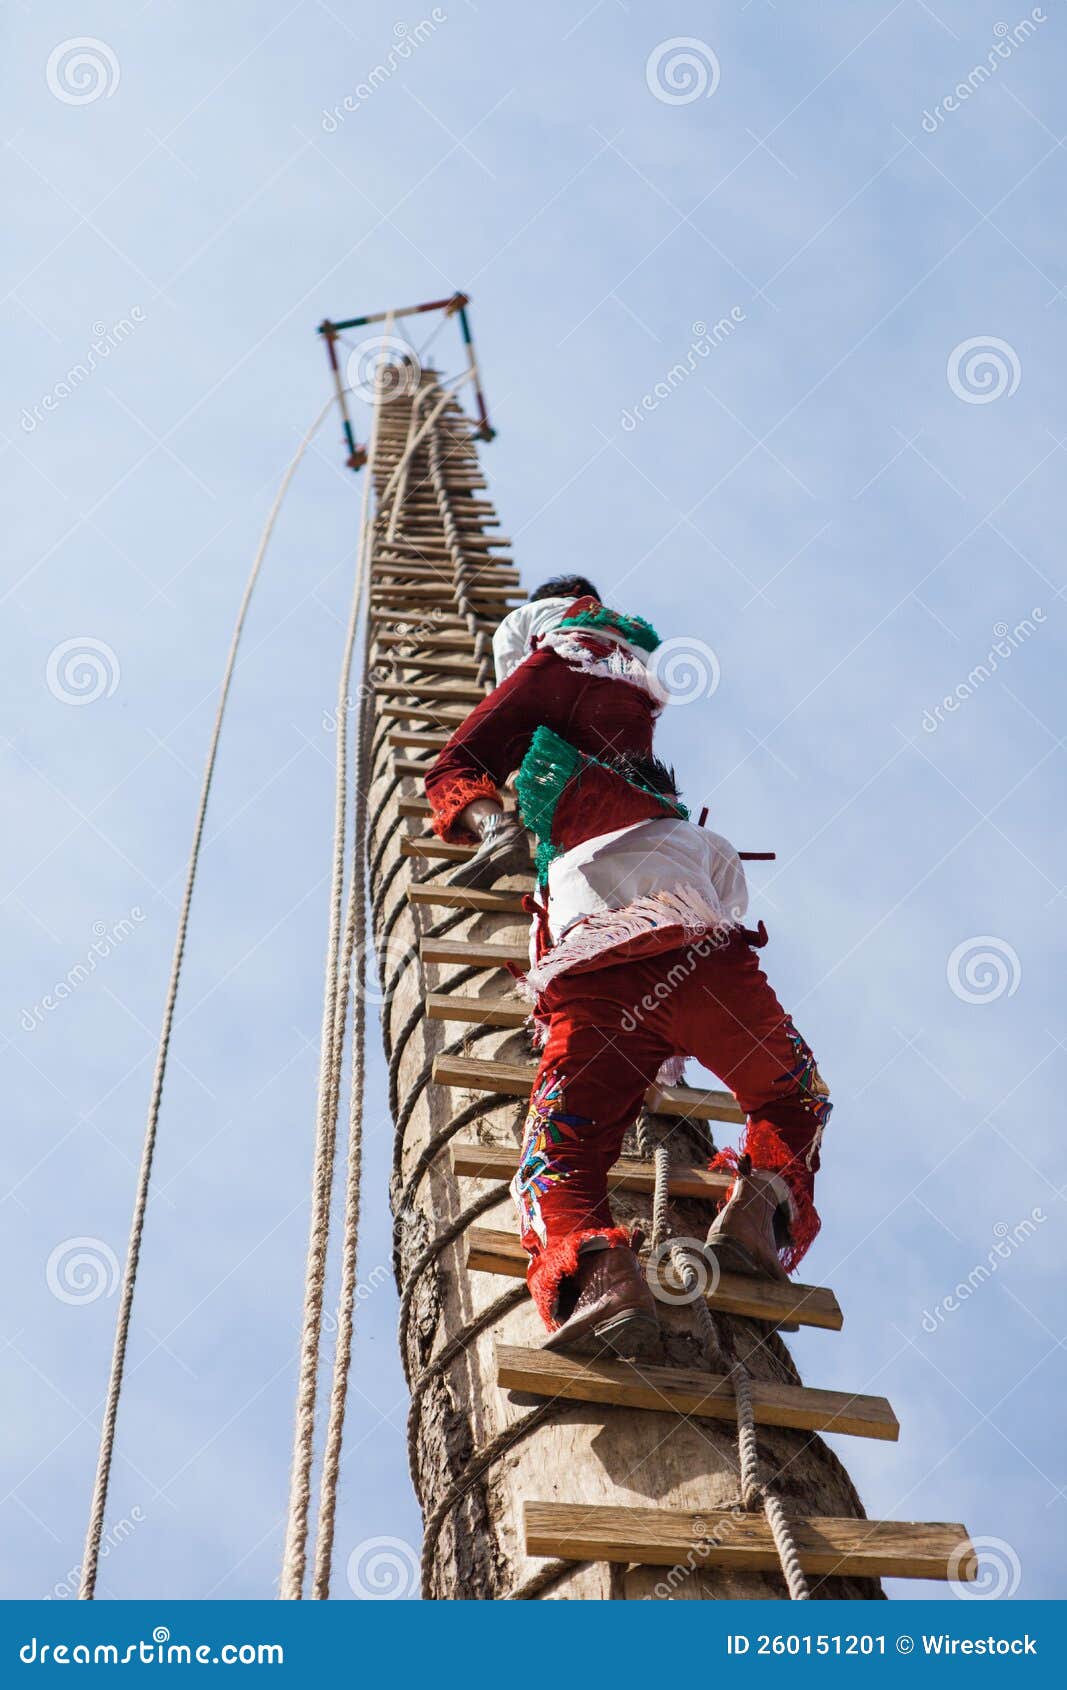 person climbing a pole for danza de los voladores in cuetzalan del progreso, puebla, mexico